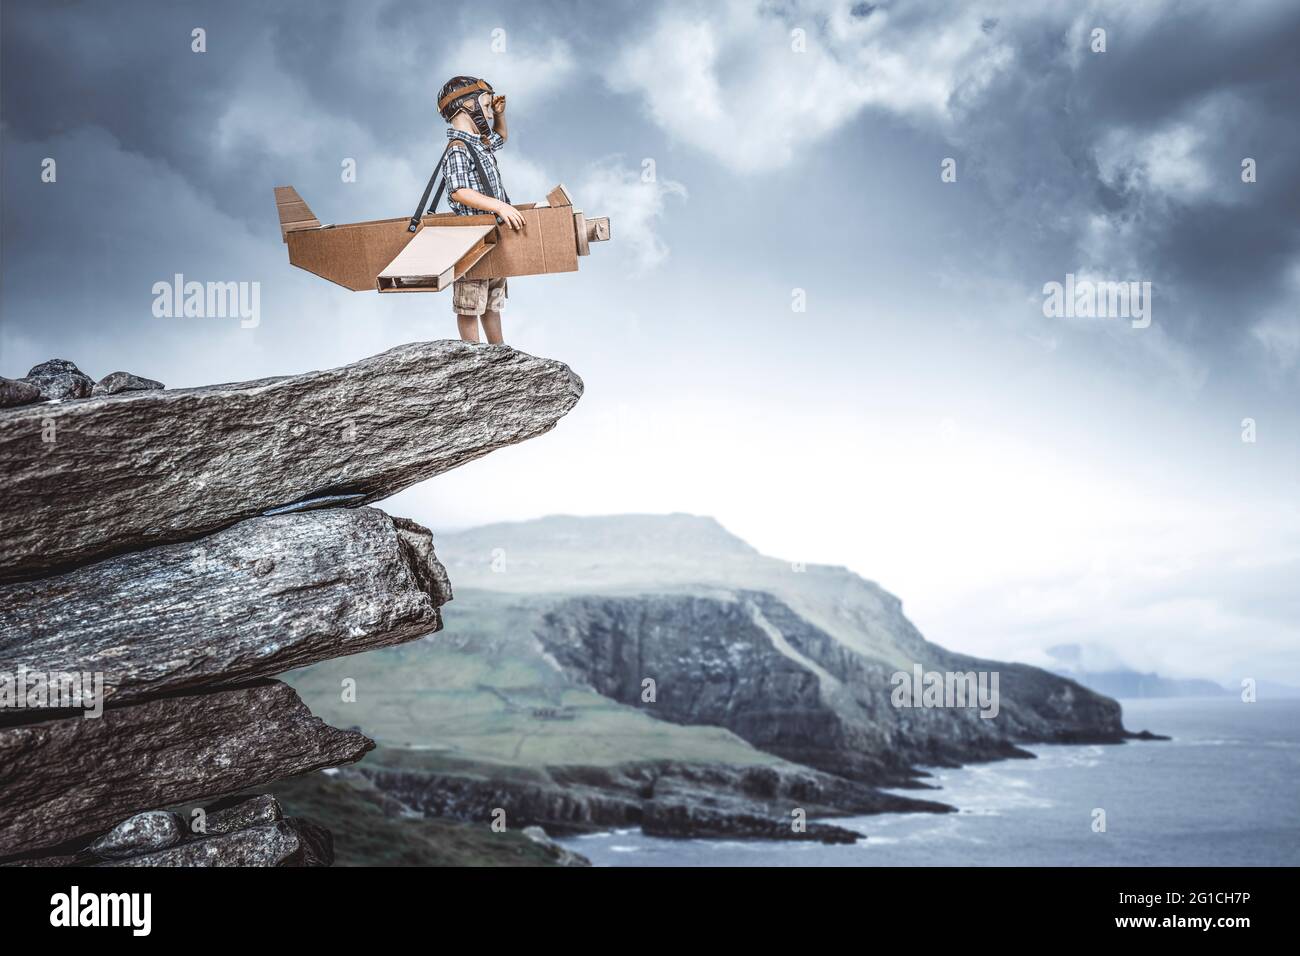 bambino vestito da aviatore con aereo di cartone su una scogliera sogna un'avventura. Foto Stock